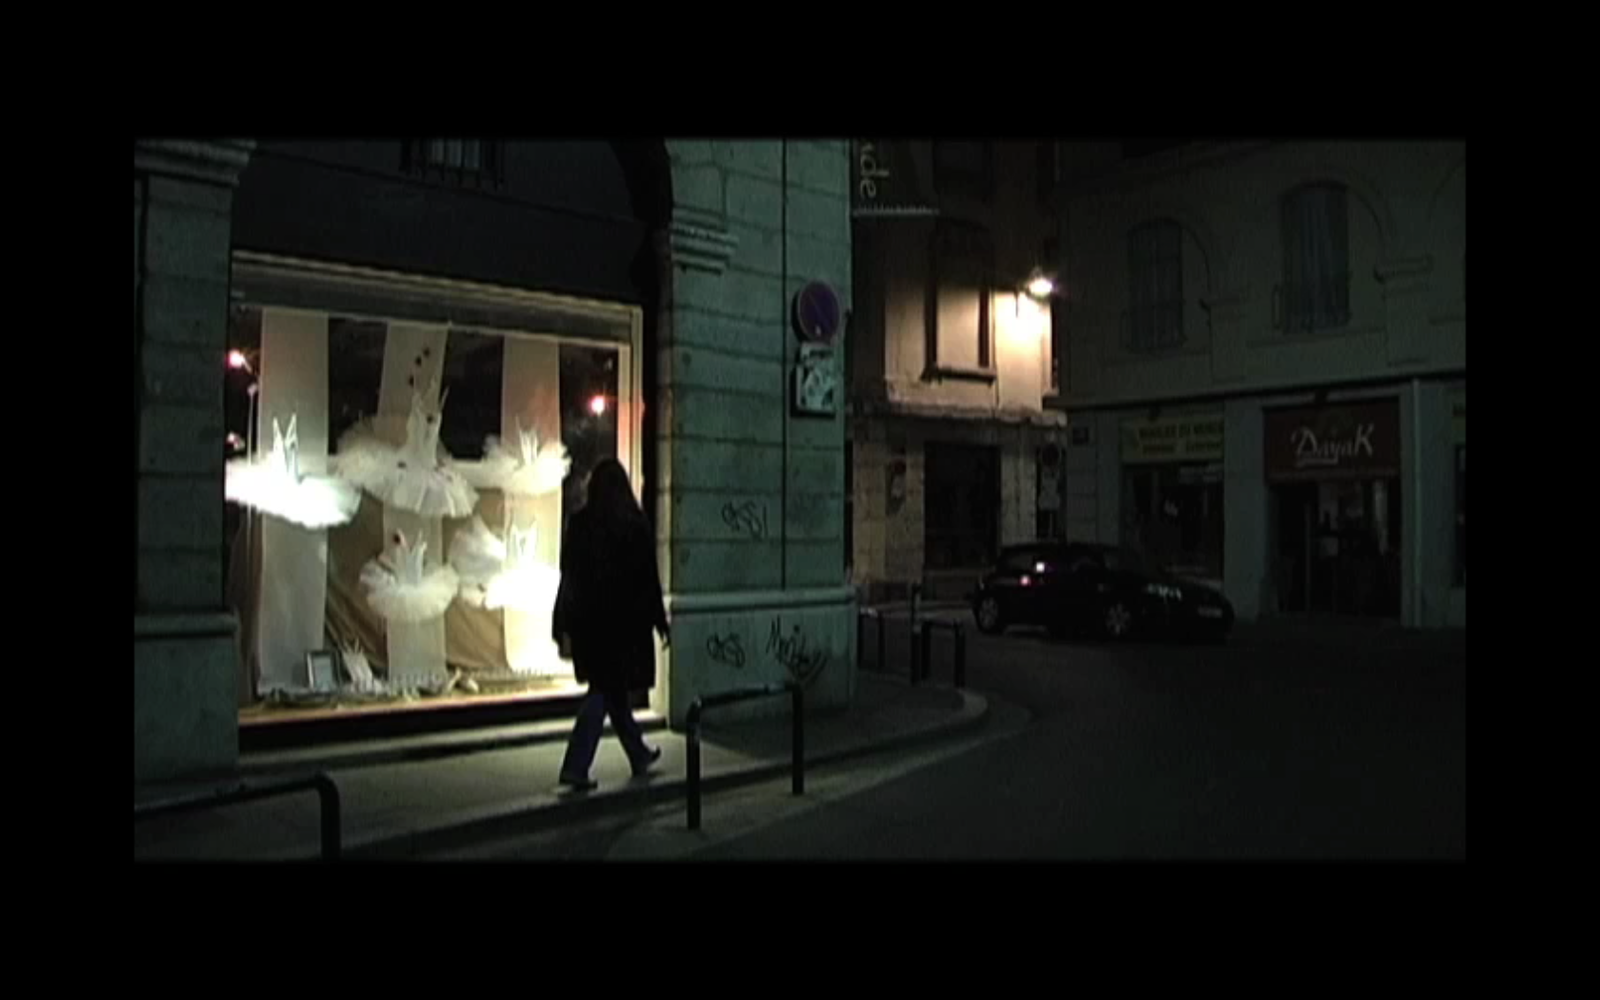 Histoire(s) de Jazz : Le Hot Club de Lyon (film réalisé par Emilie Souillot, 2009)